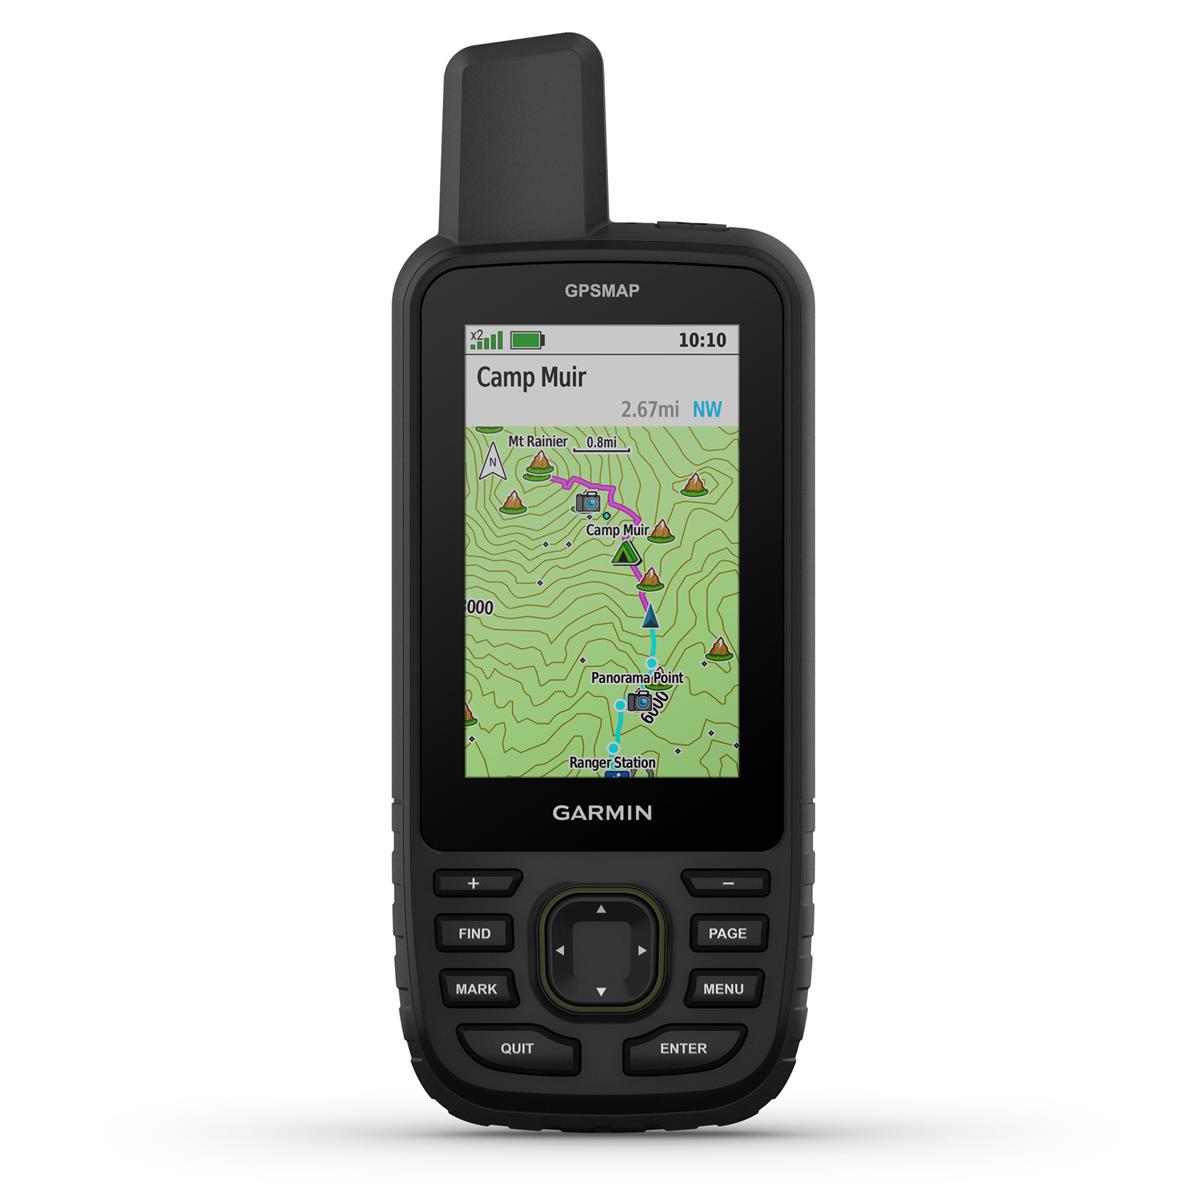 Image of Garmin GPSMAP 67 GPS Handheld Device